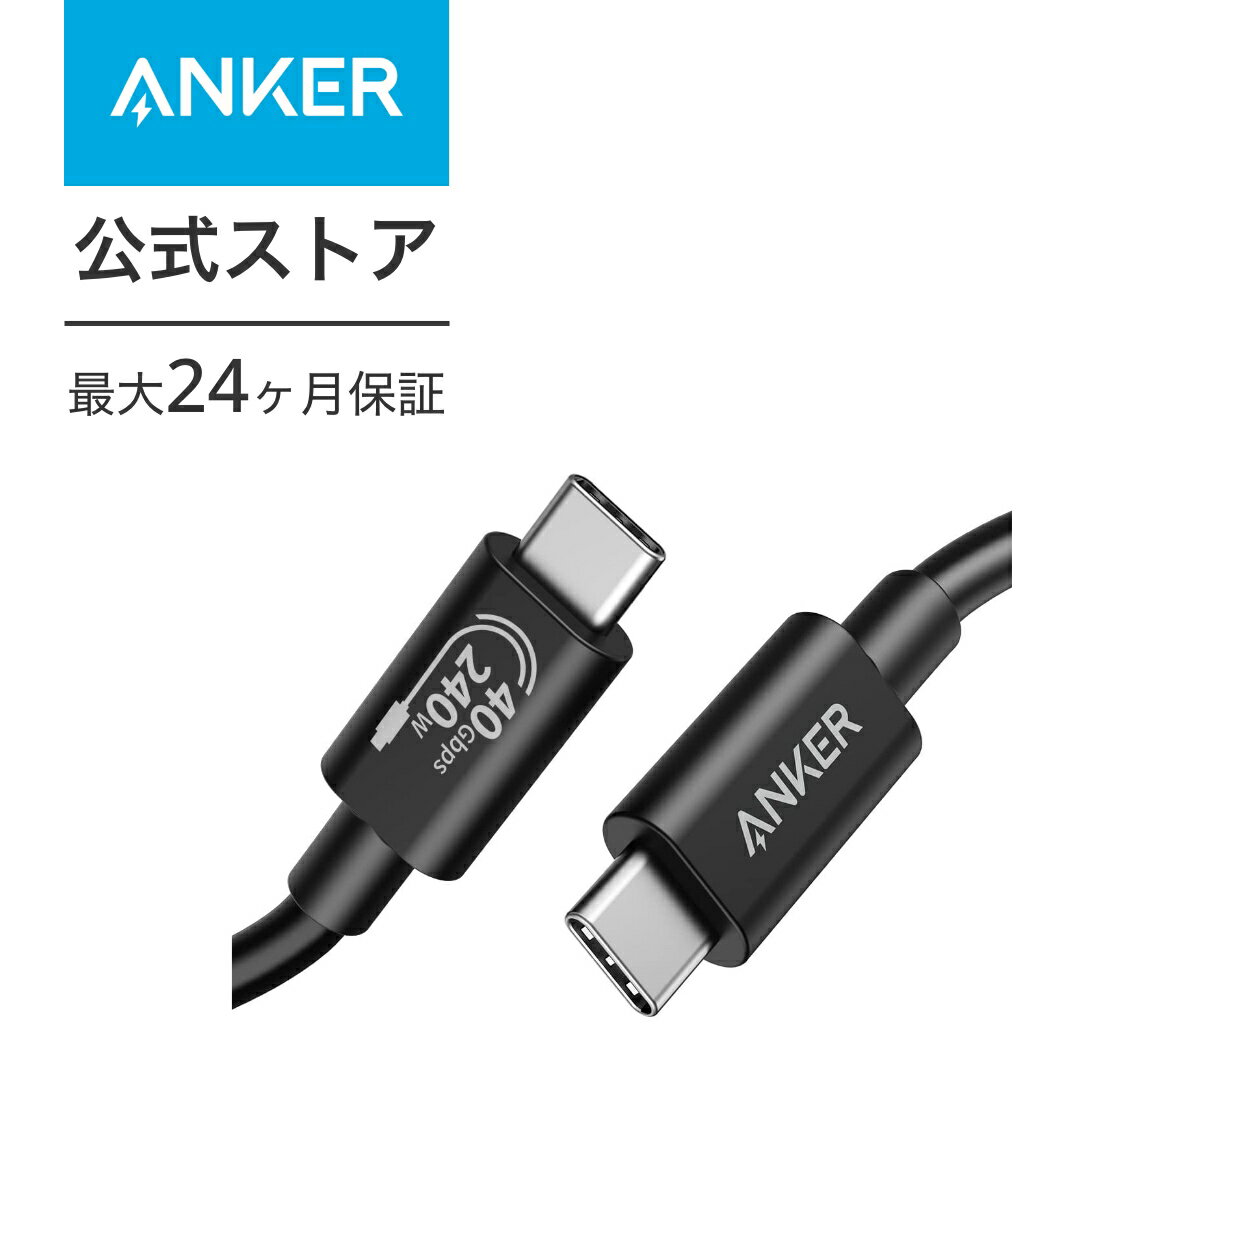 Anker 515 USB-C & USB-C ケーブル (